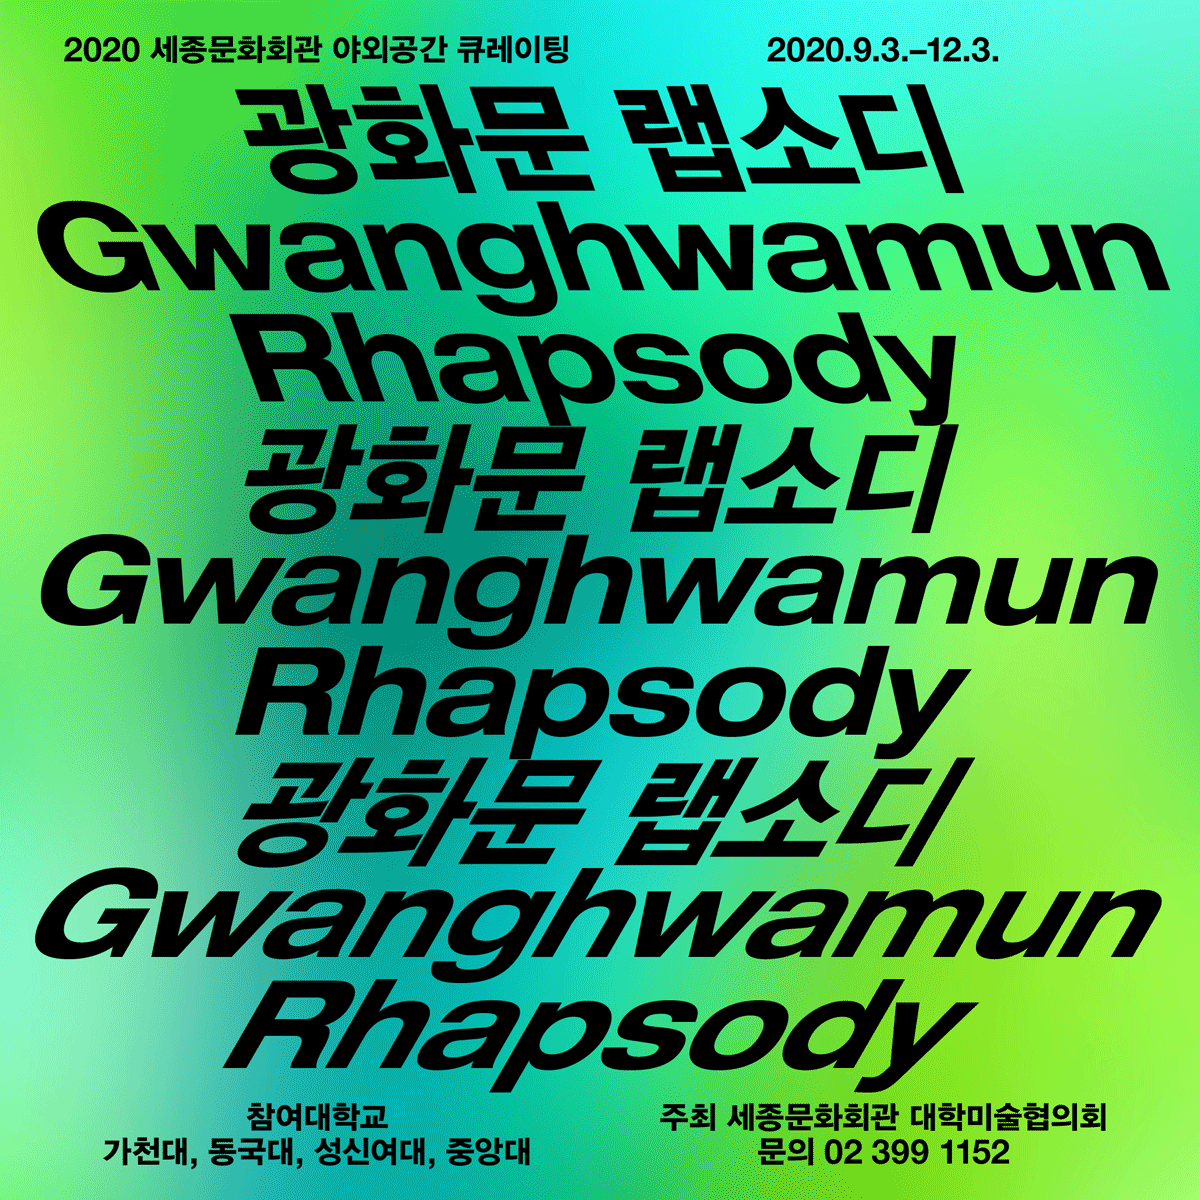 2020セジョン(世宗)文化会館の屋外スペースにおけるキュレーション｢クァンファムン(光化門)ラプソディー Gwanghwamun Rhapsody`